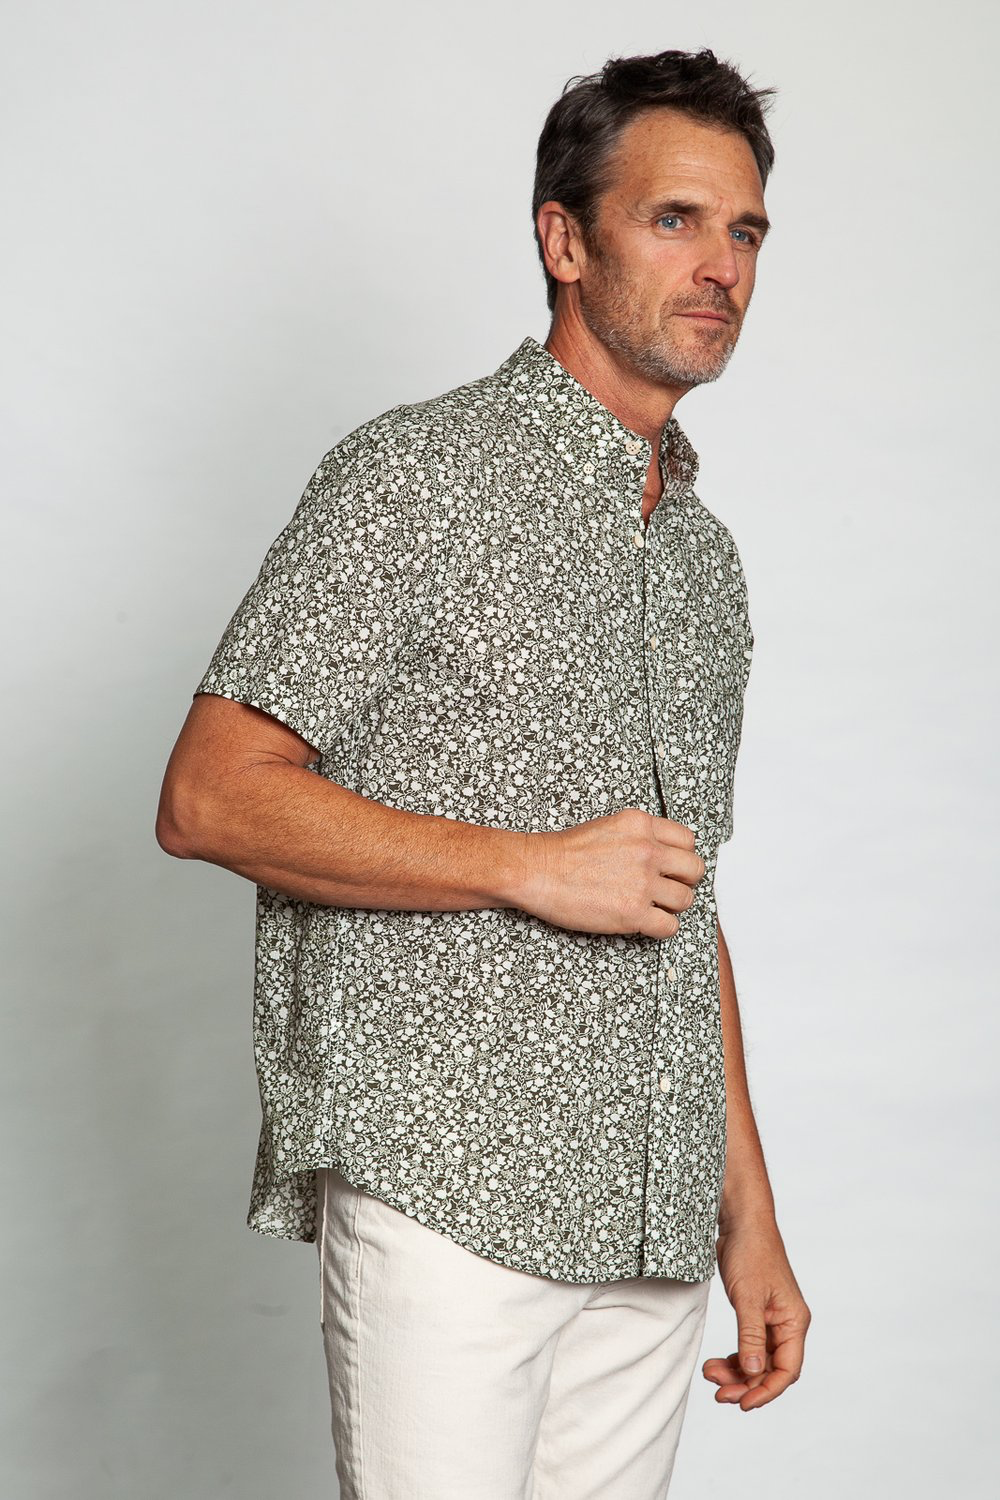 Super Bloom Short Sleeve Shirt - Olive - Kingfisher Road - Online Boutique